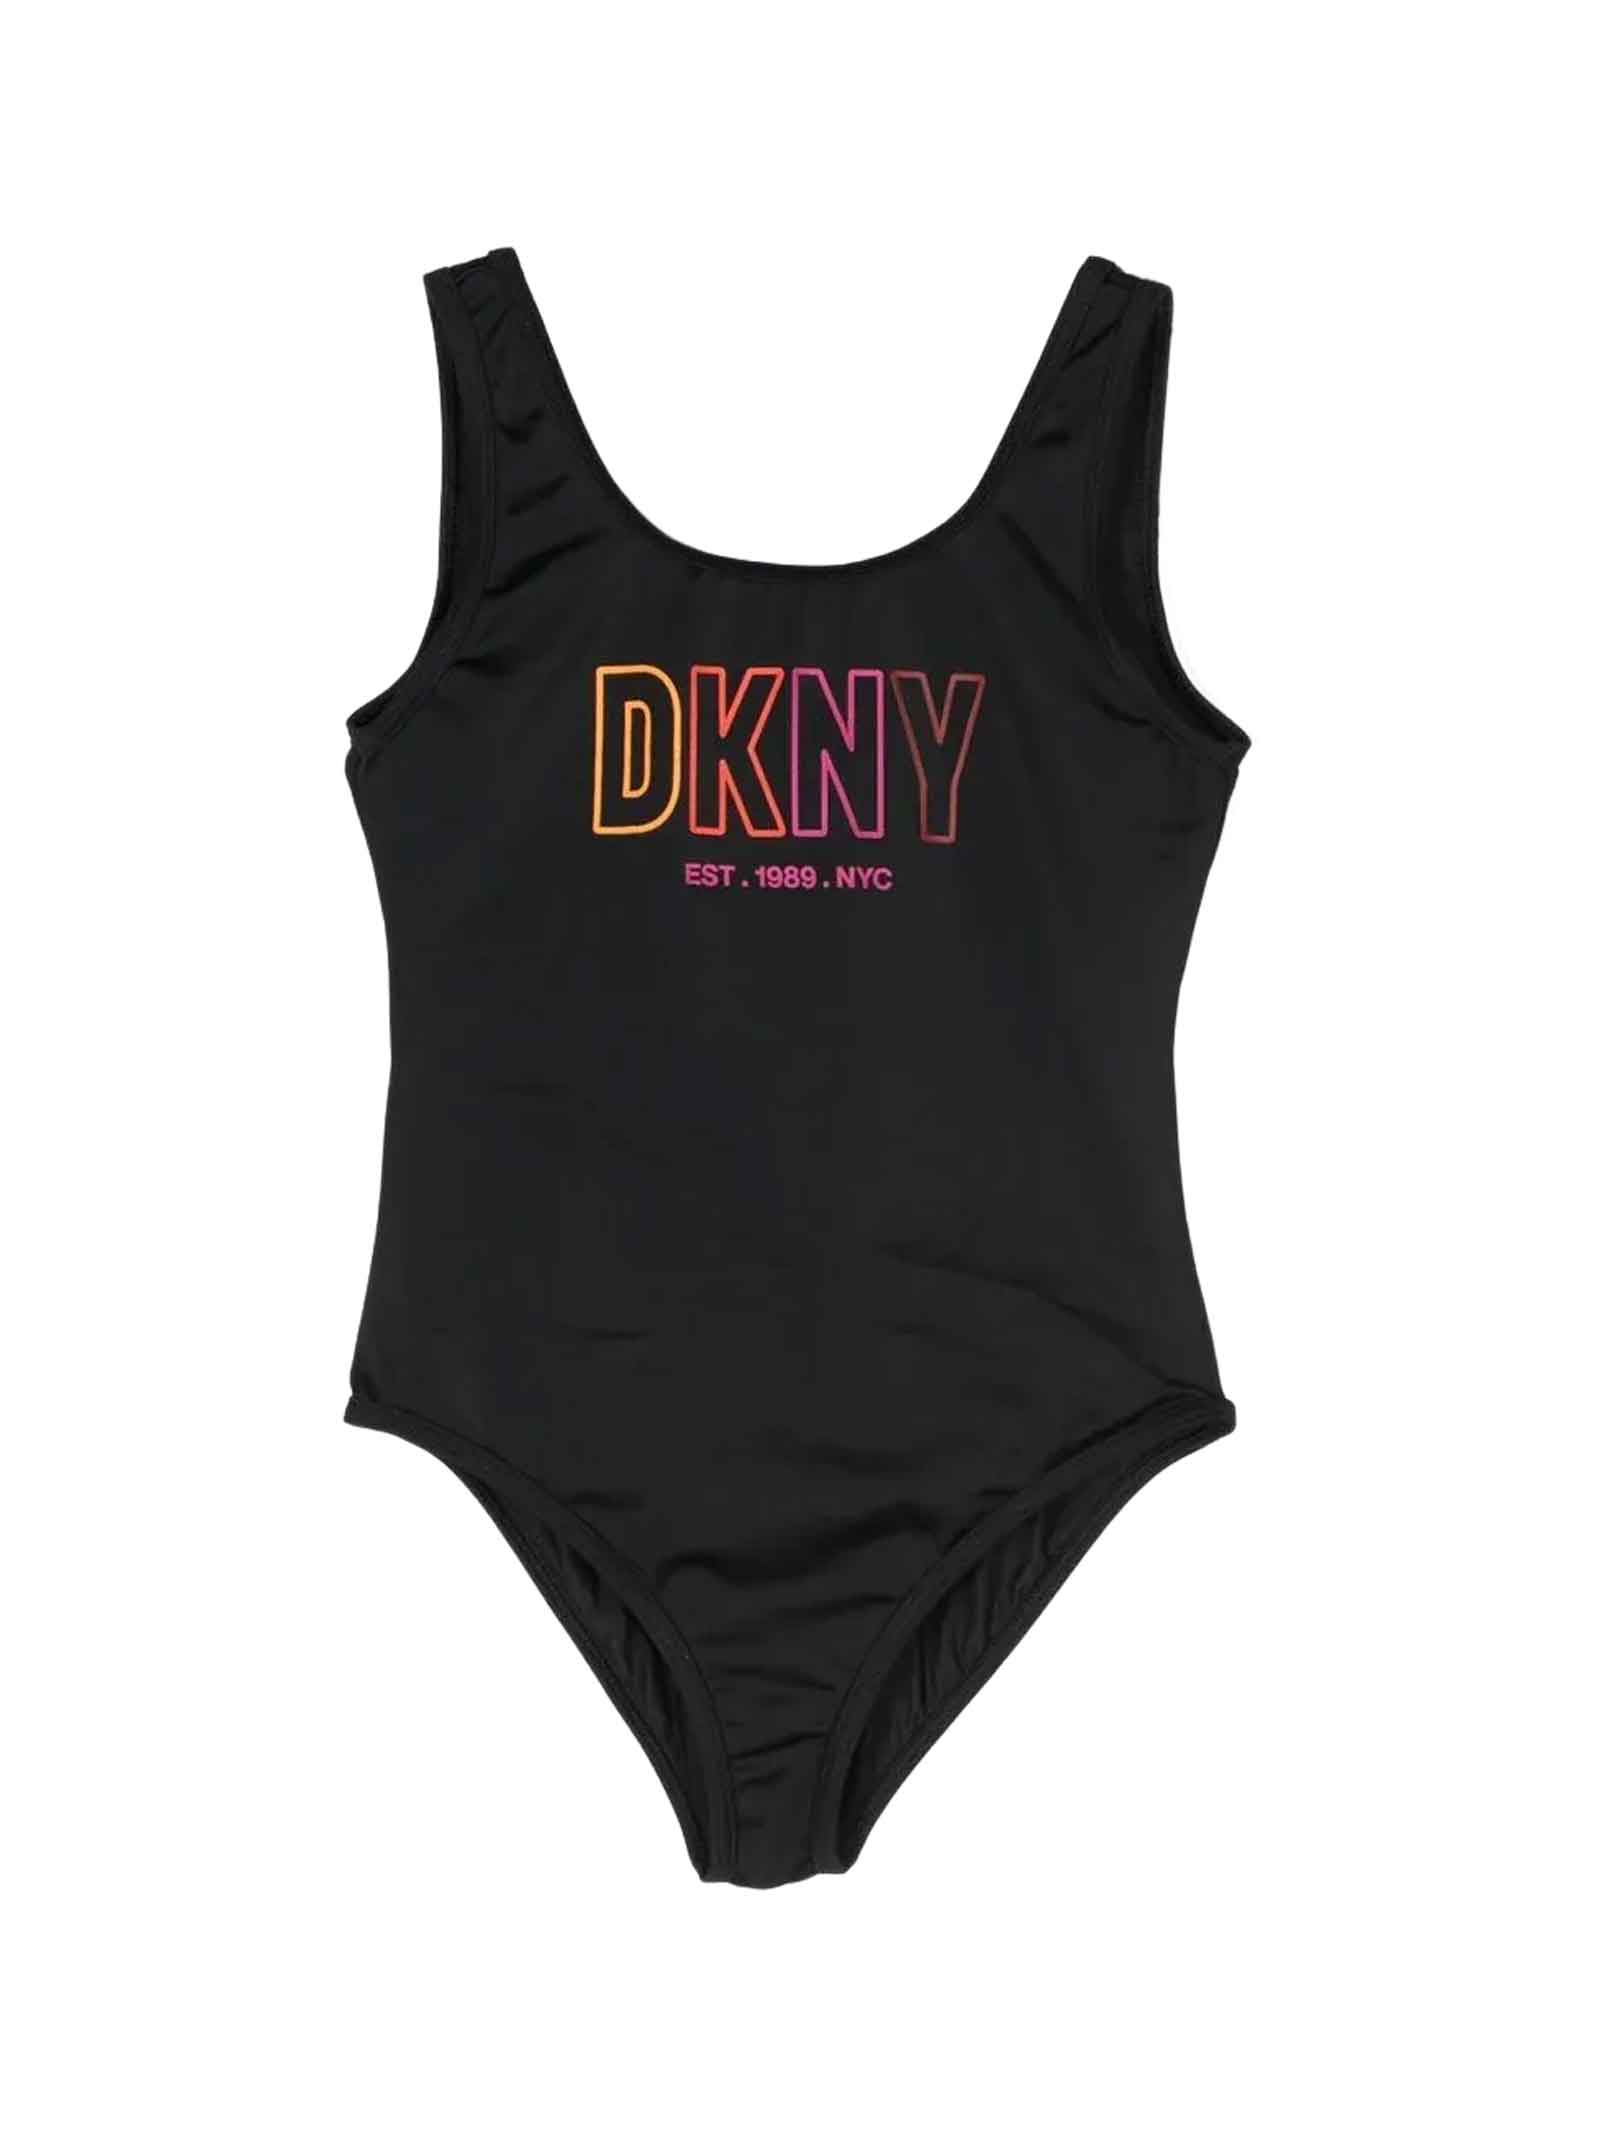 DKNY Black Swimsuit Girl